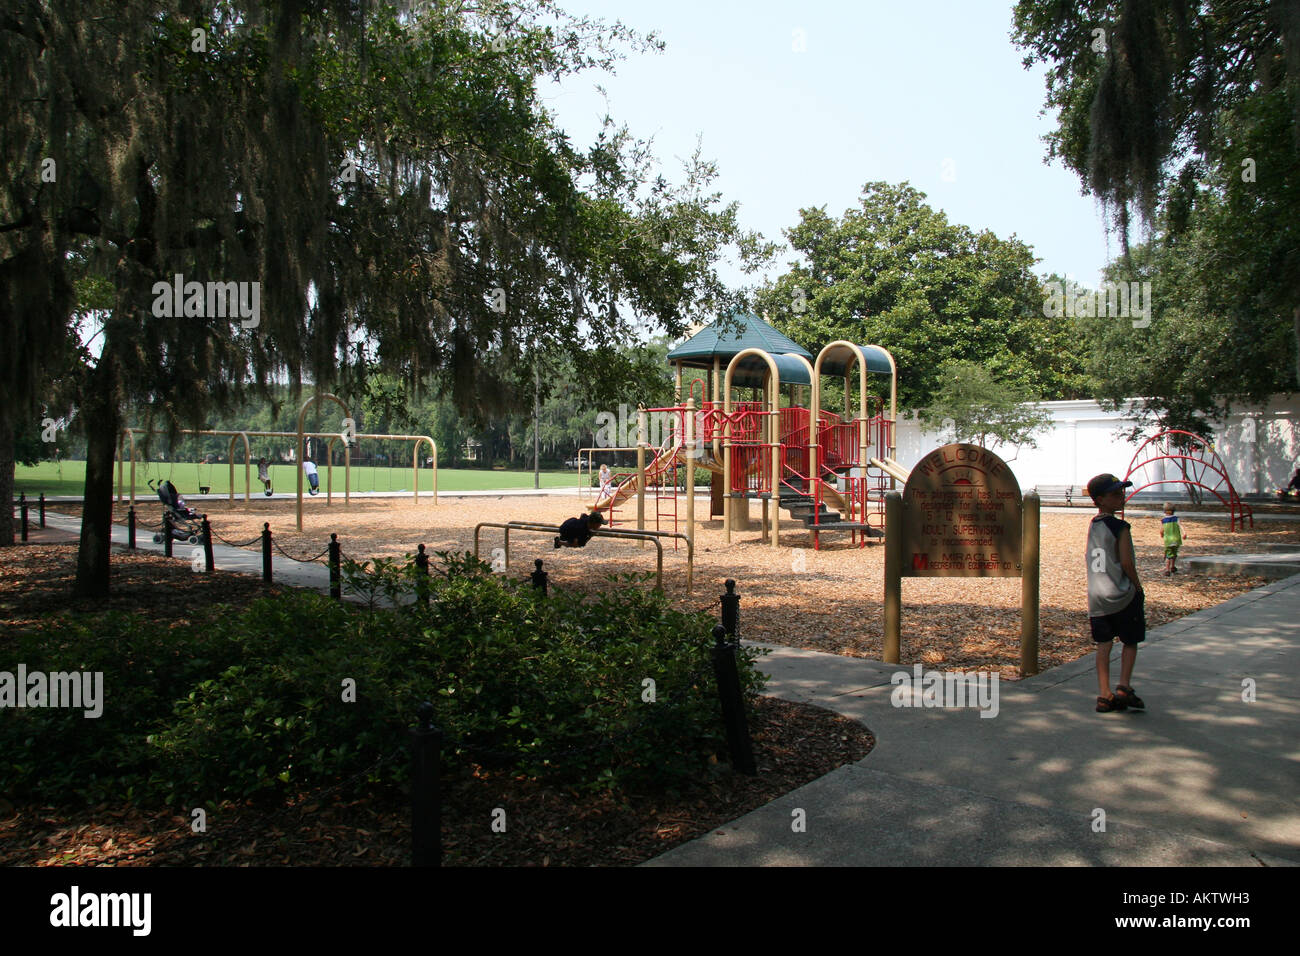 Playground in Forsyth Park Savannah, Georgia, USA. Stock Photo